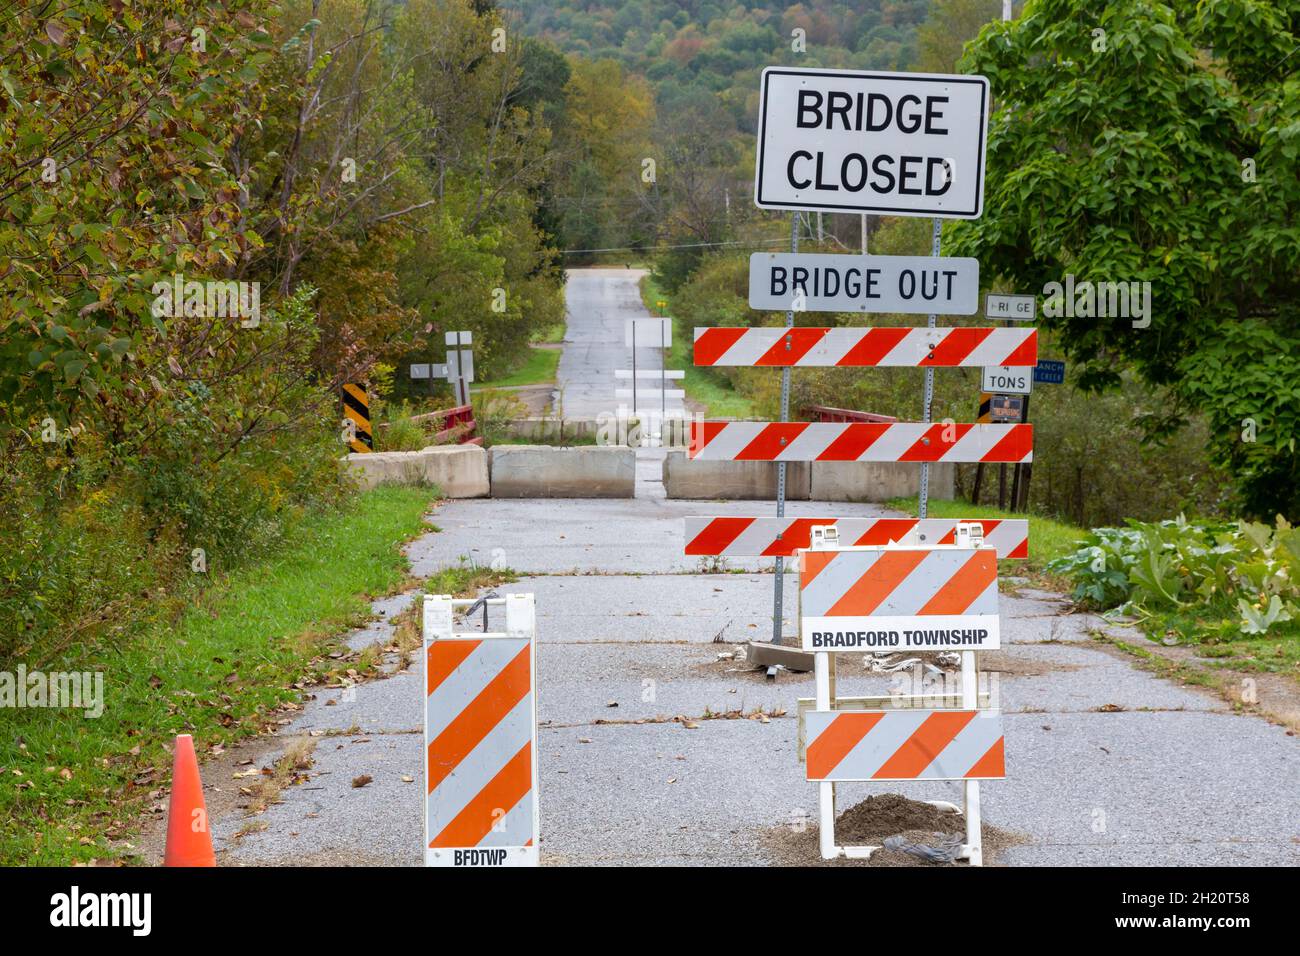 Bradford, Pennsylvanie - des panneaux indiquent que le pont de Clarks Lane est impasible au-dessus de la branche ouest du ruisseau Tunungwant. Banque D'Images